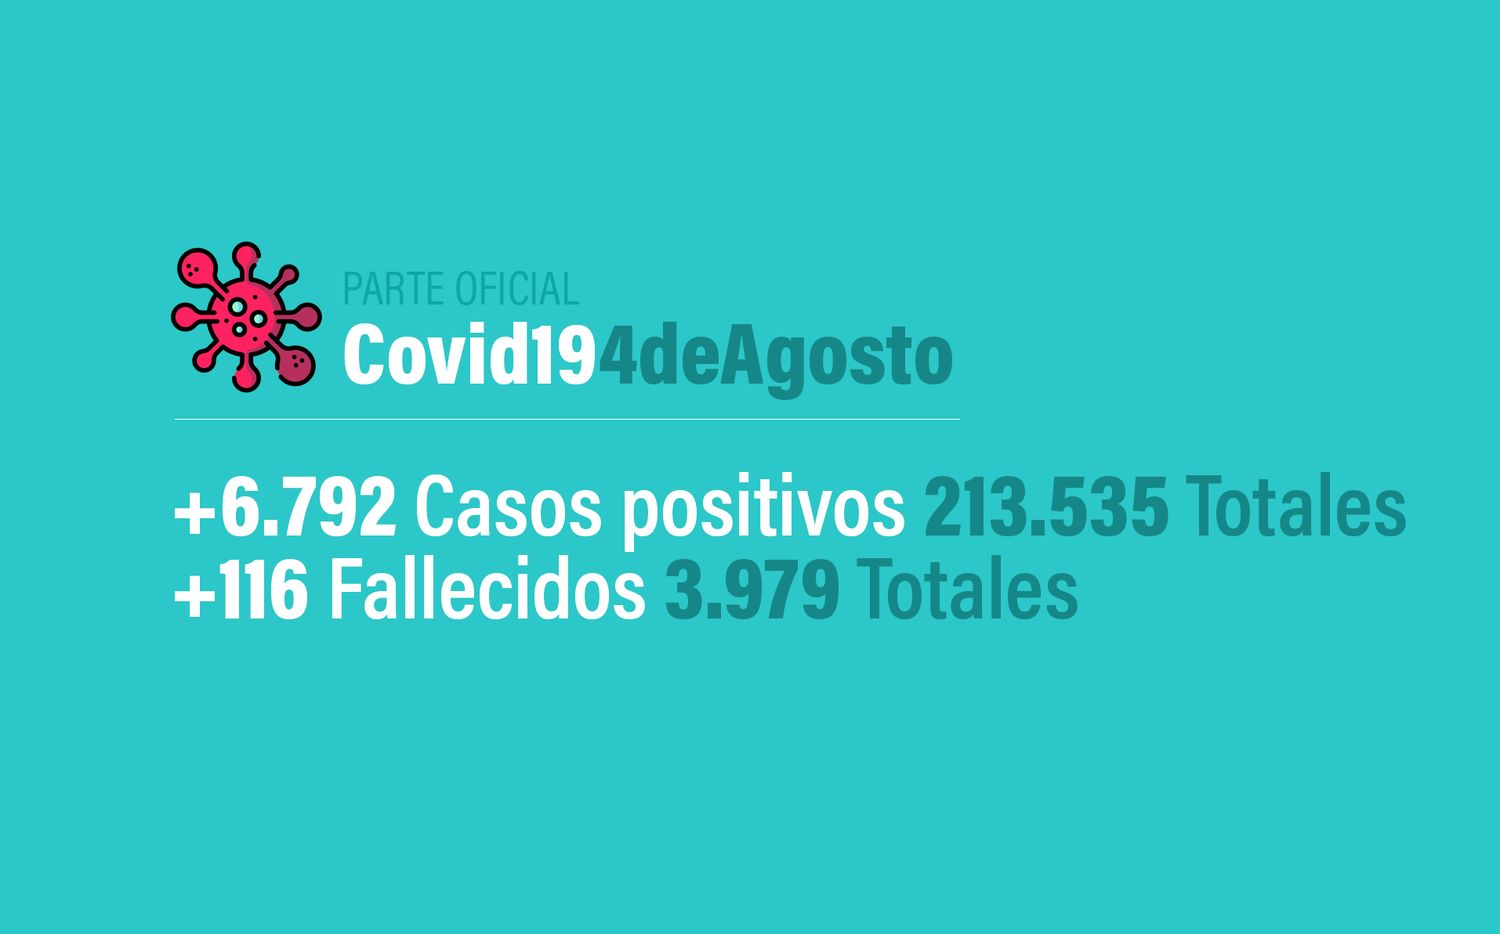 Coronavirus en Argentina: 6792 nuevos casos, 213535 confirmados, 94129 recuperados y 3979 muertes, al 4 de agosto